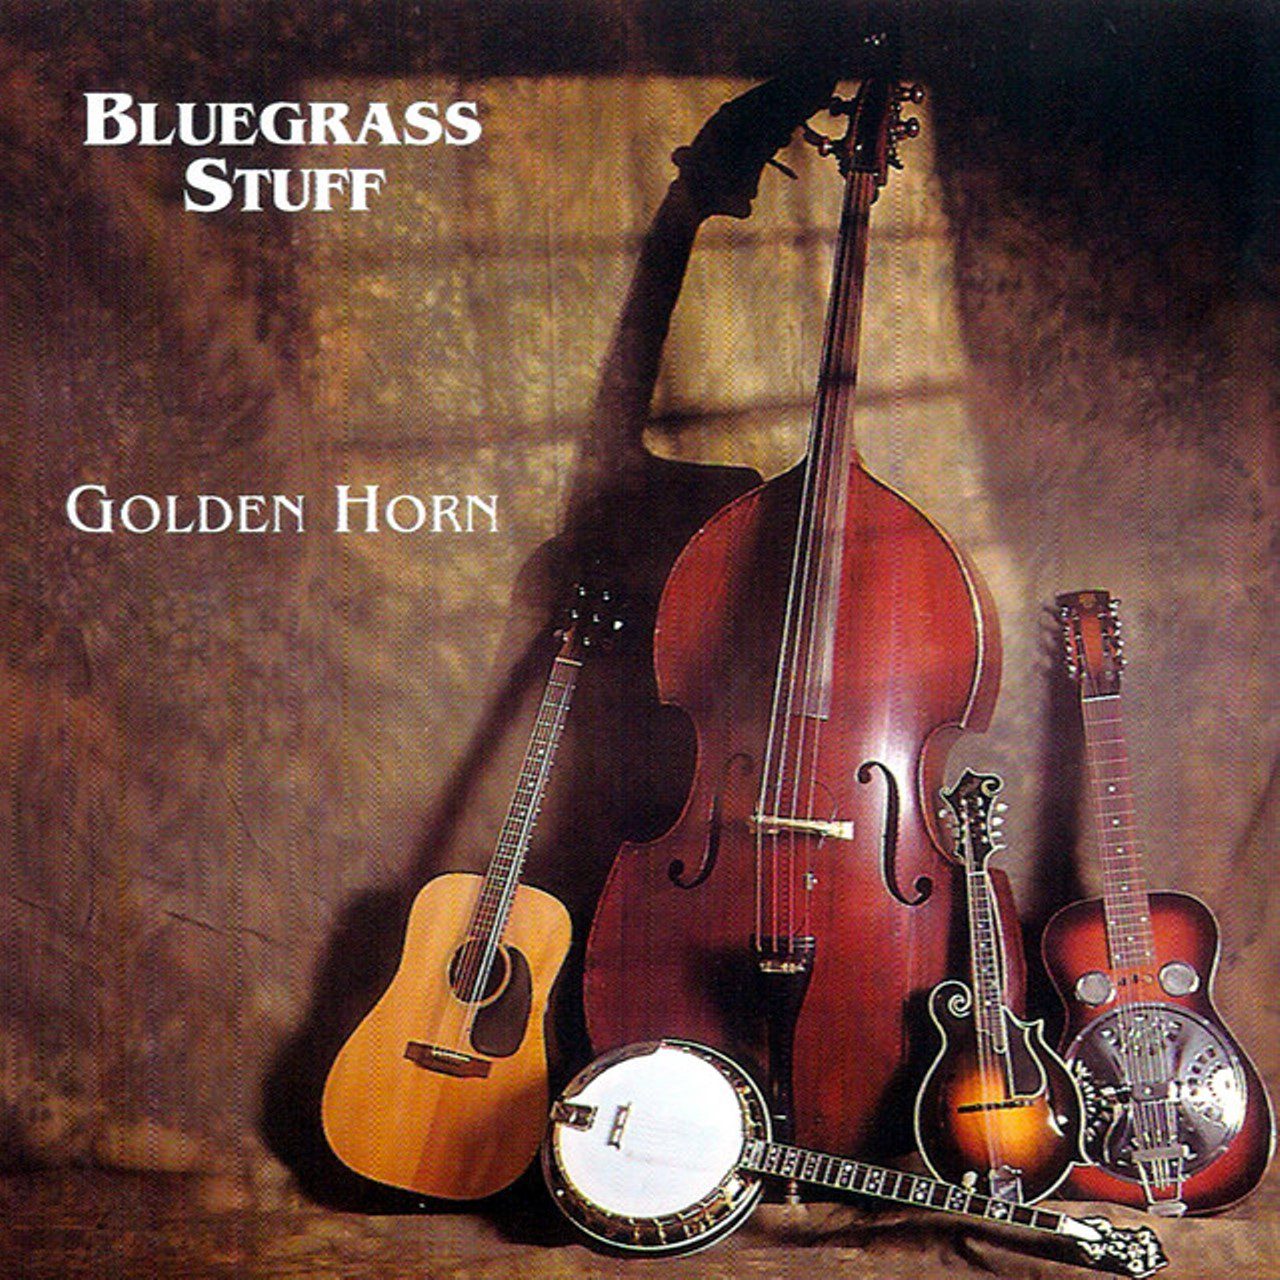 Bluegrass Stuff – Golden Horn cover album